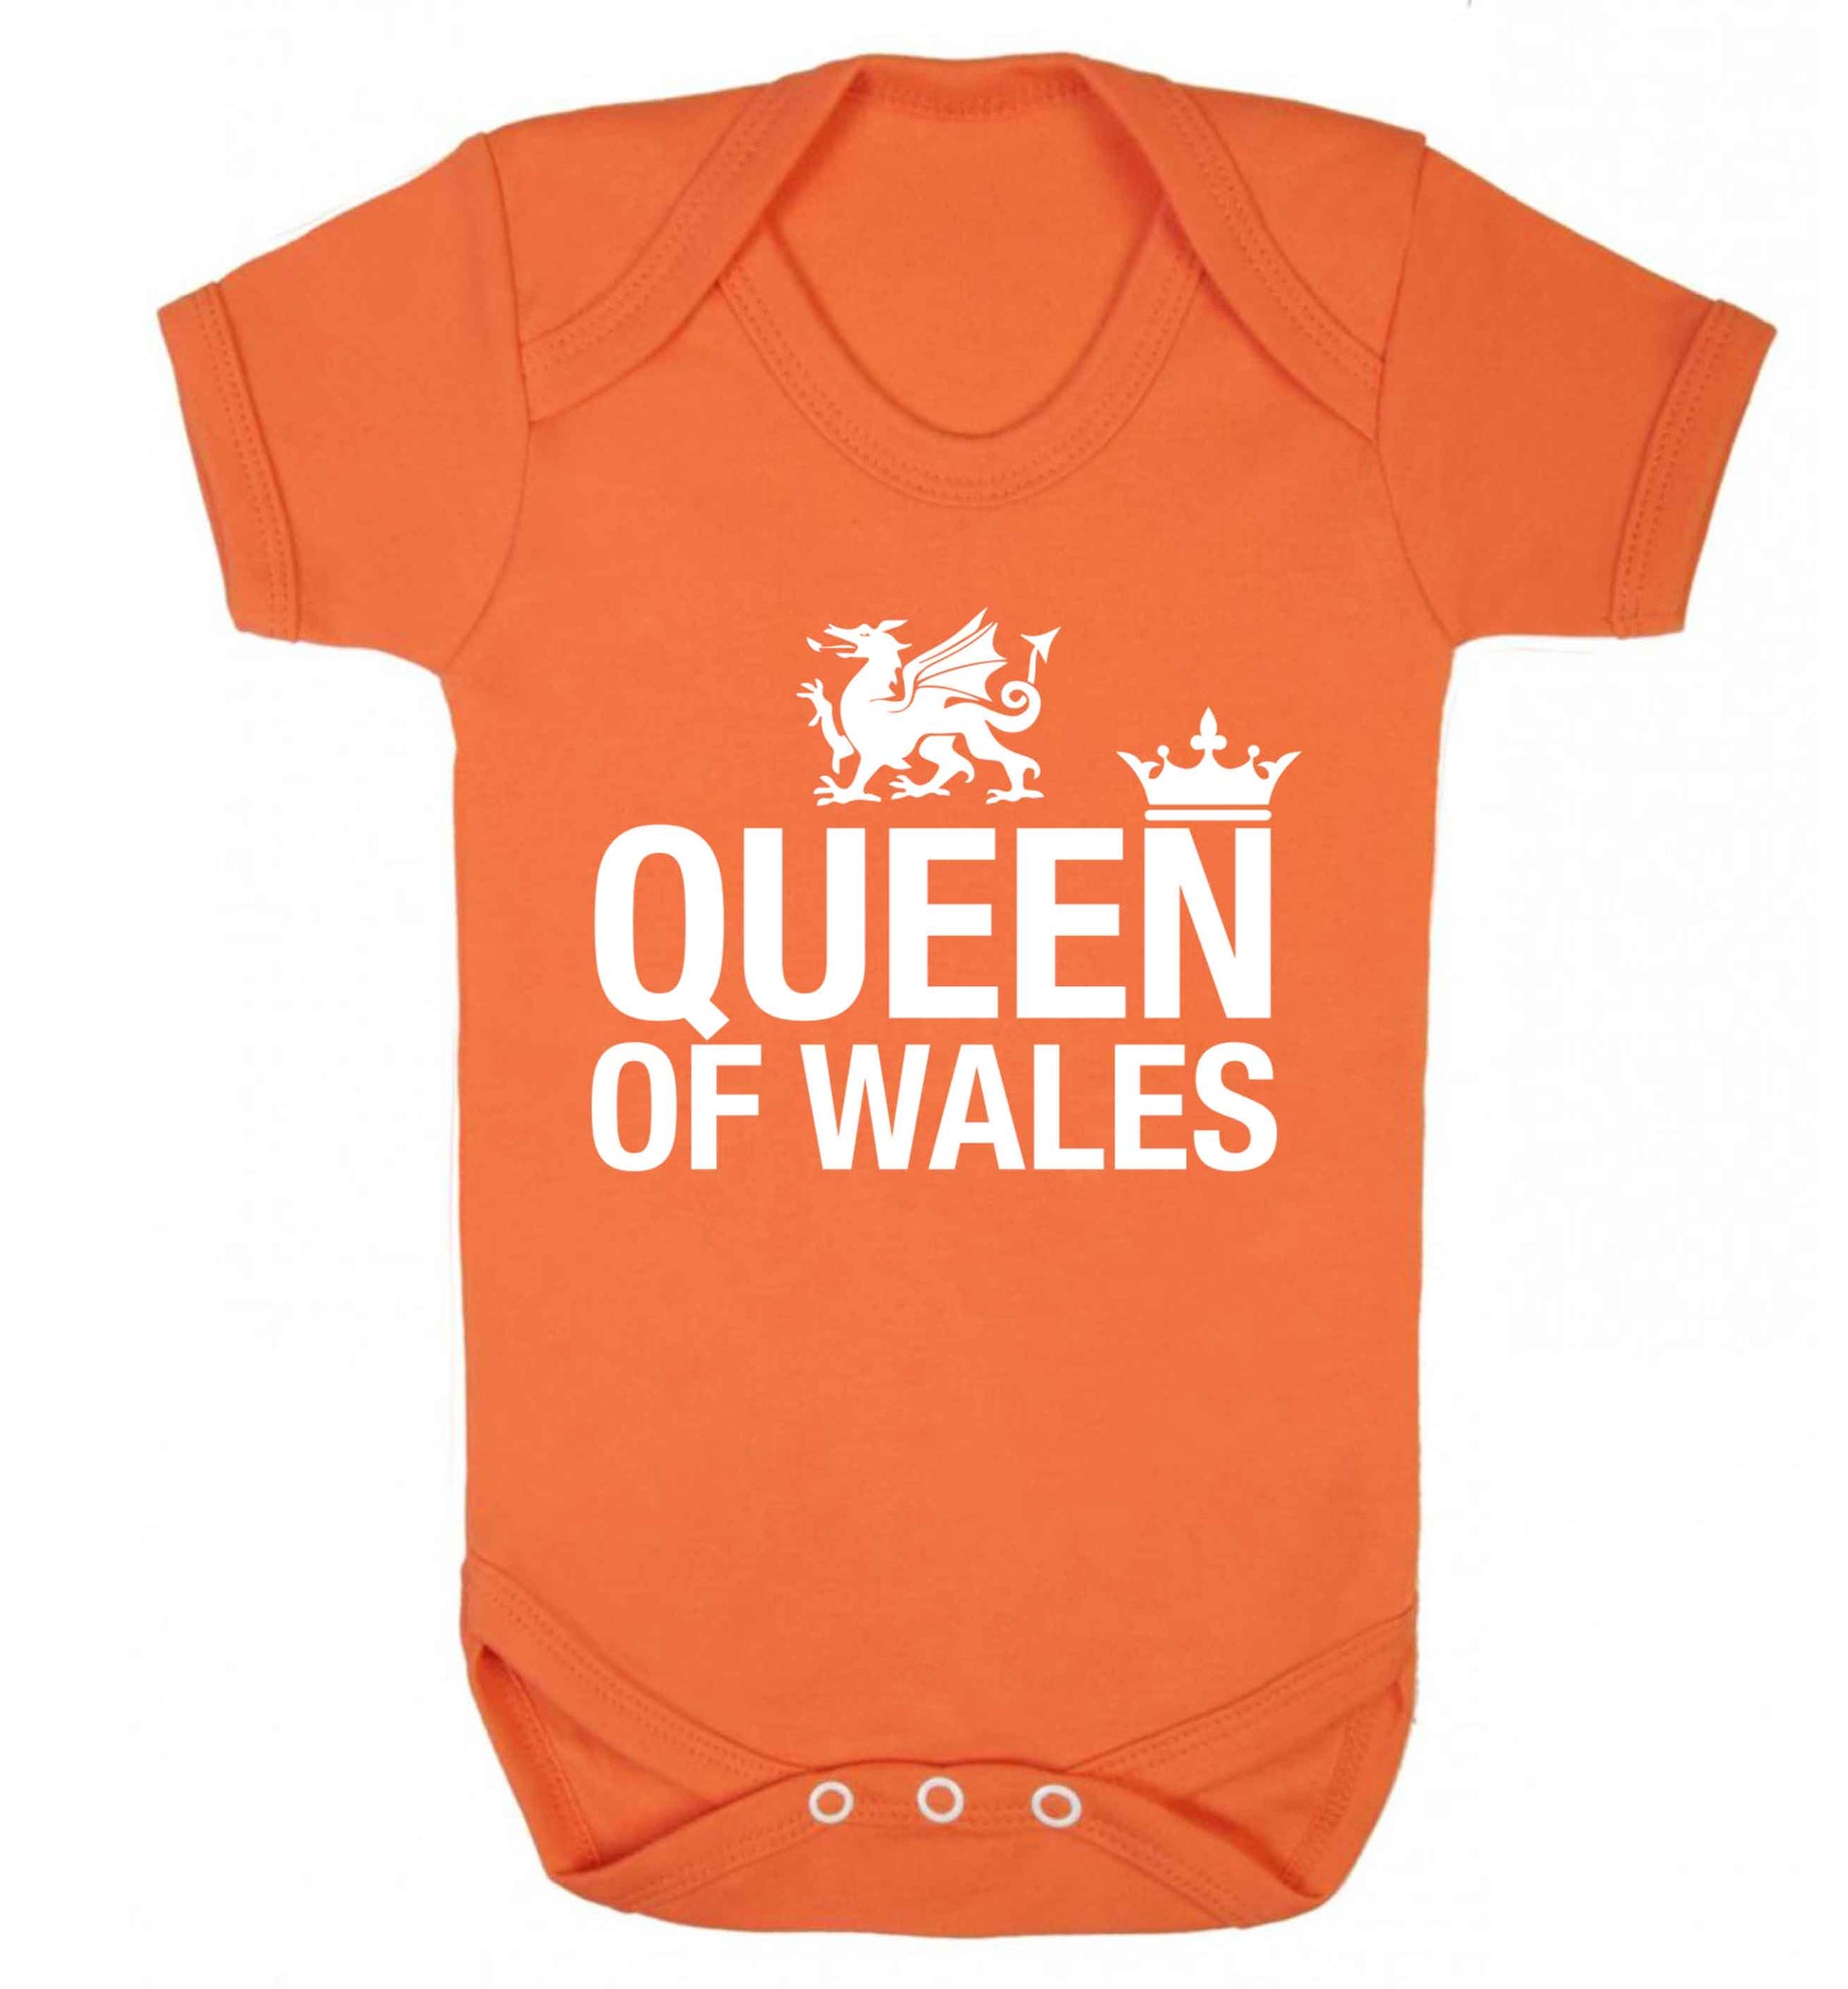 Queen of Wales Baby Vest orange 18-24 months